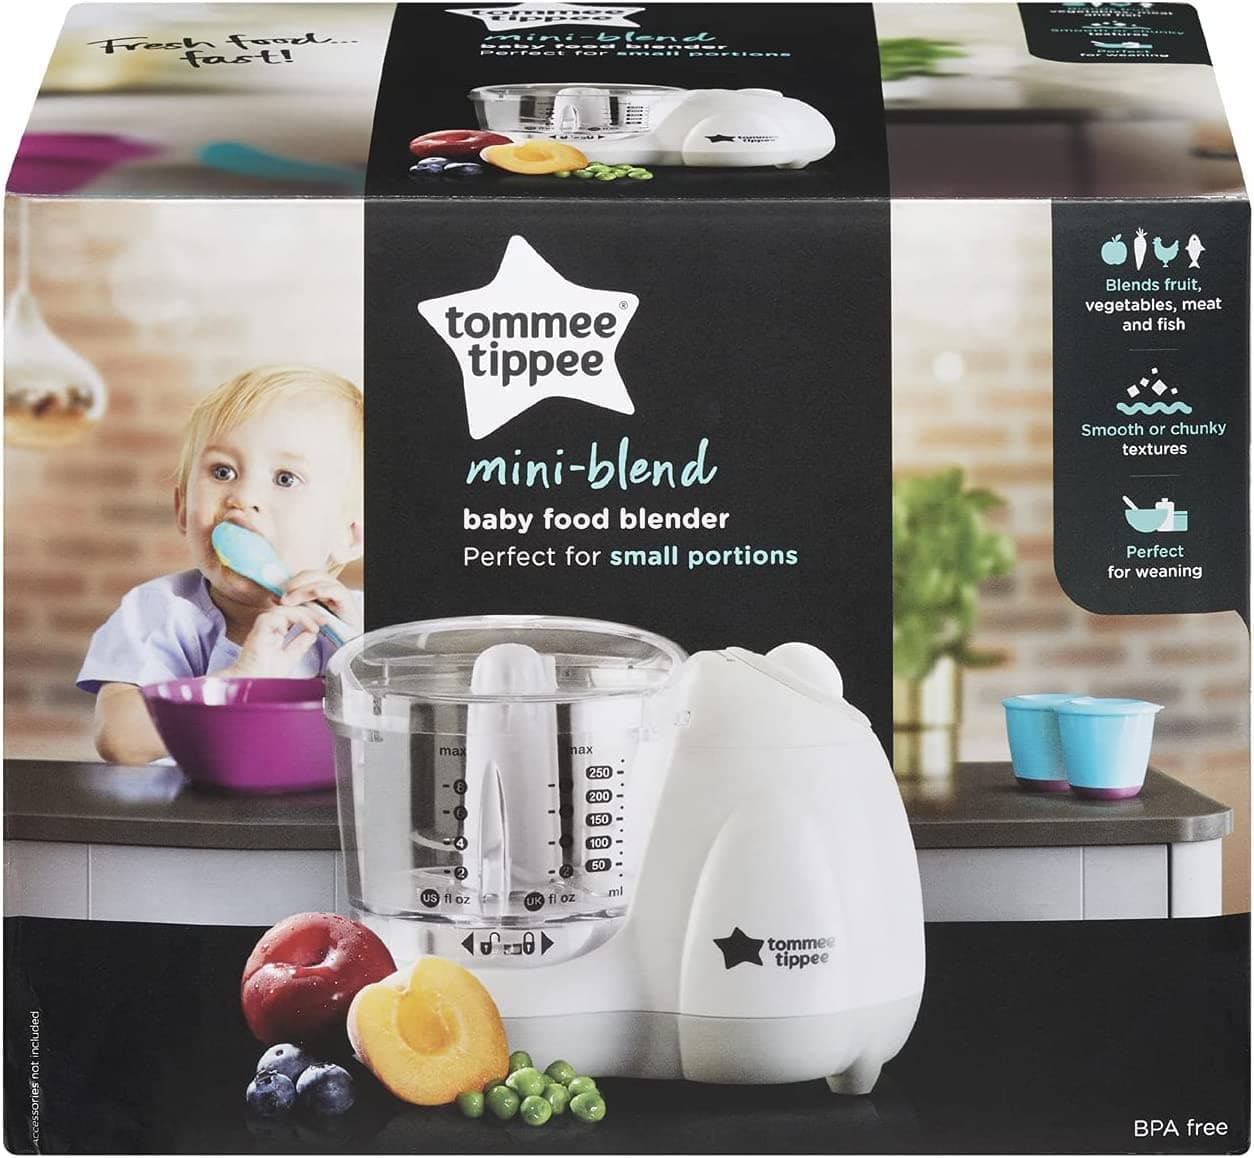 Tommee Tippee Mini Blend Baby Food Blender.